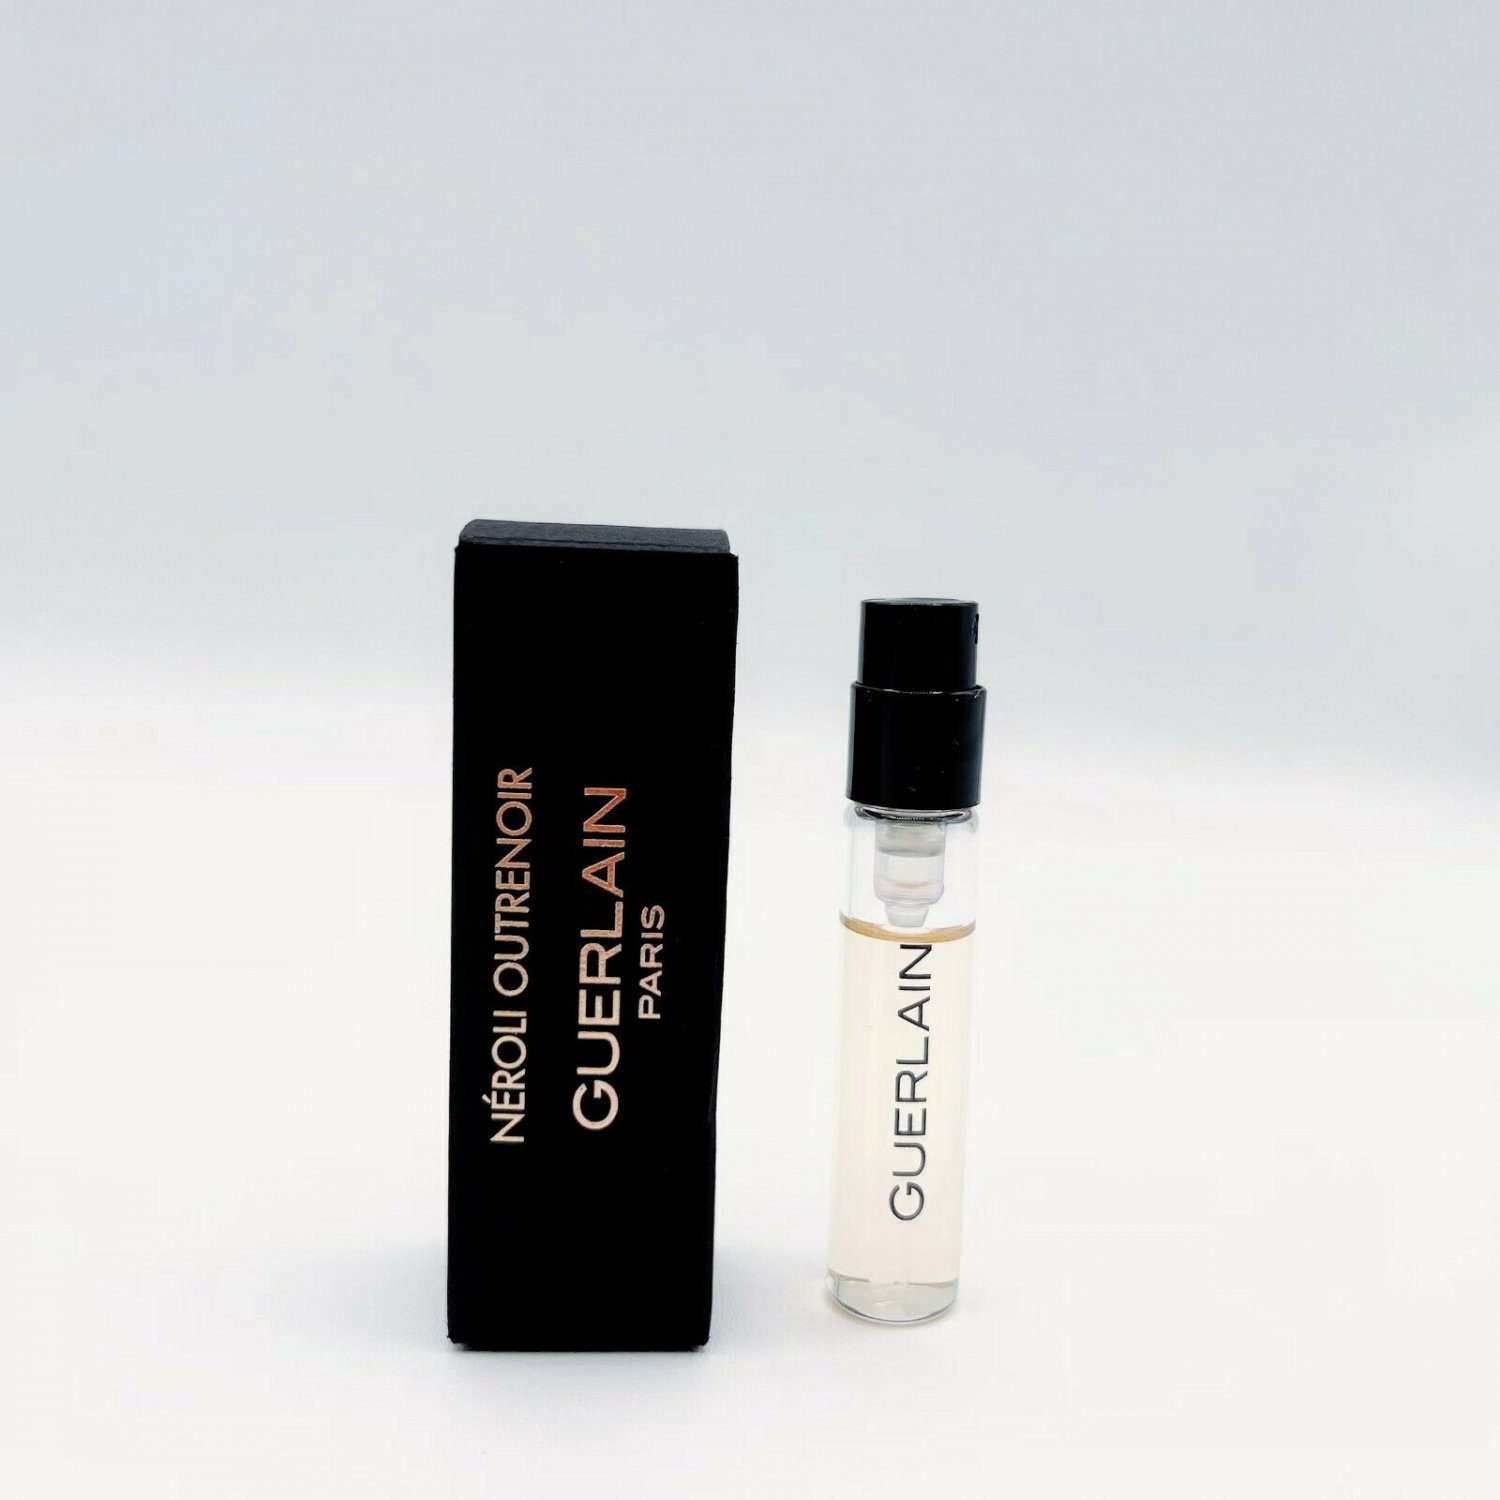 LOUIS VUITTON ORAGE Cologne Sample Eau de Parfum 0.06 oz Spray.